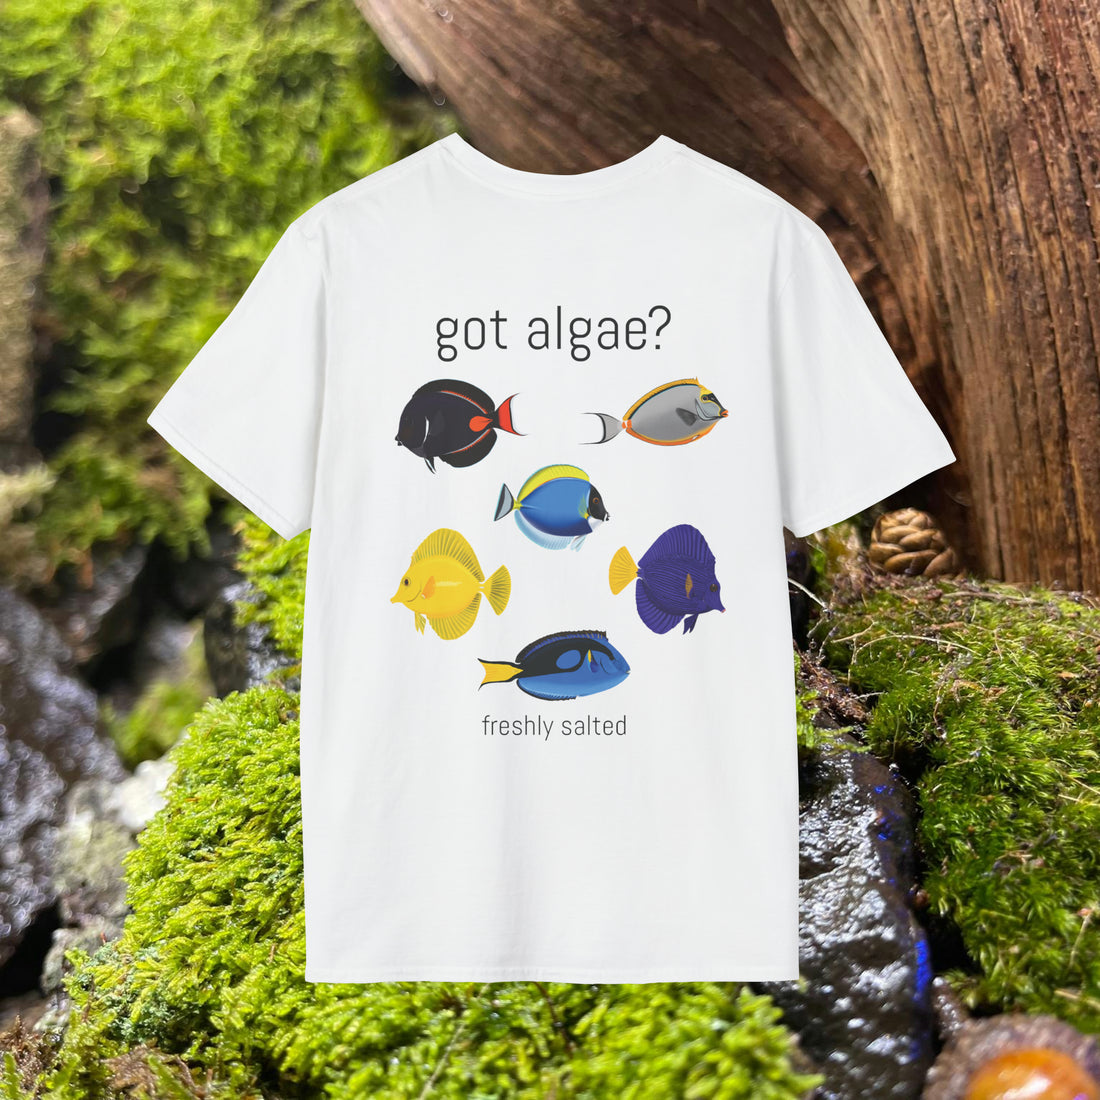 “Got Algae?” Tee